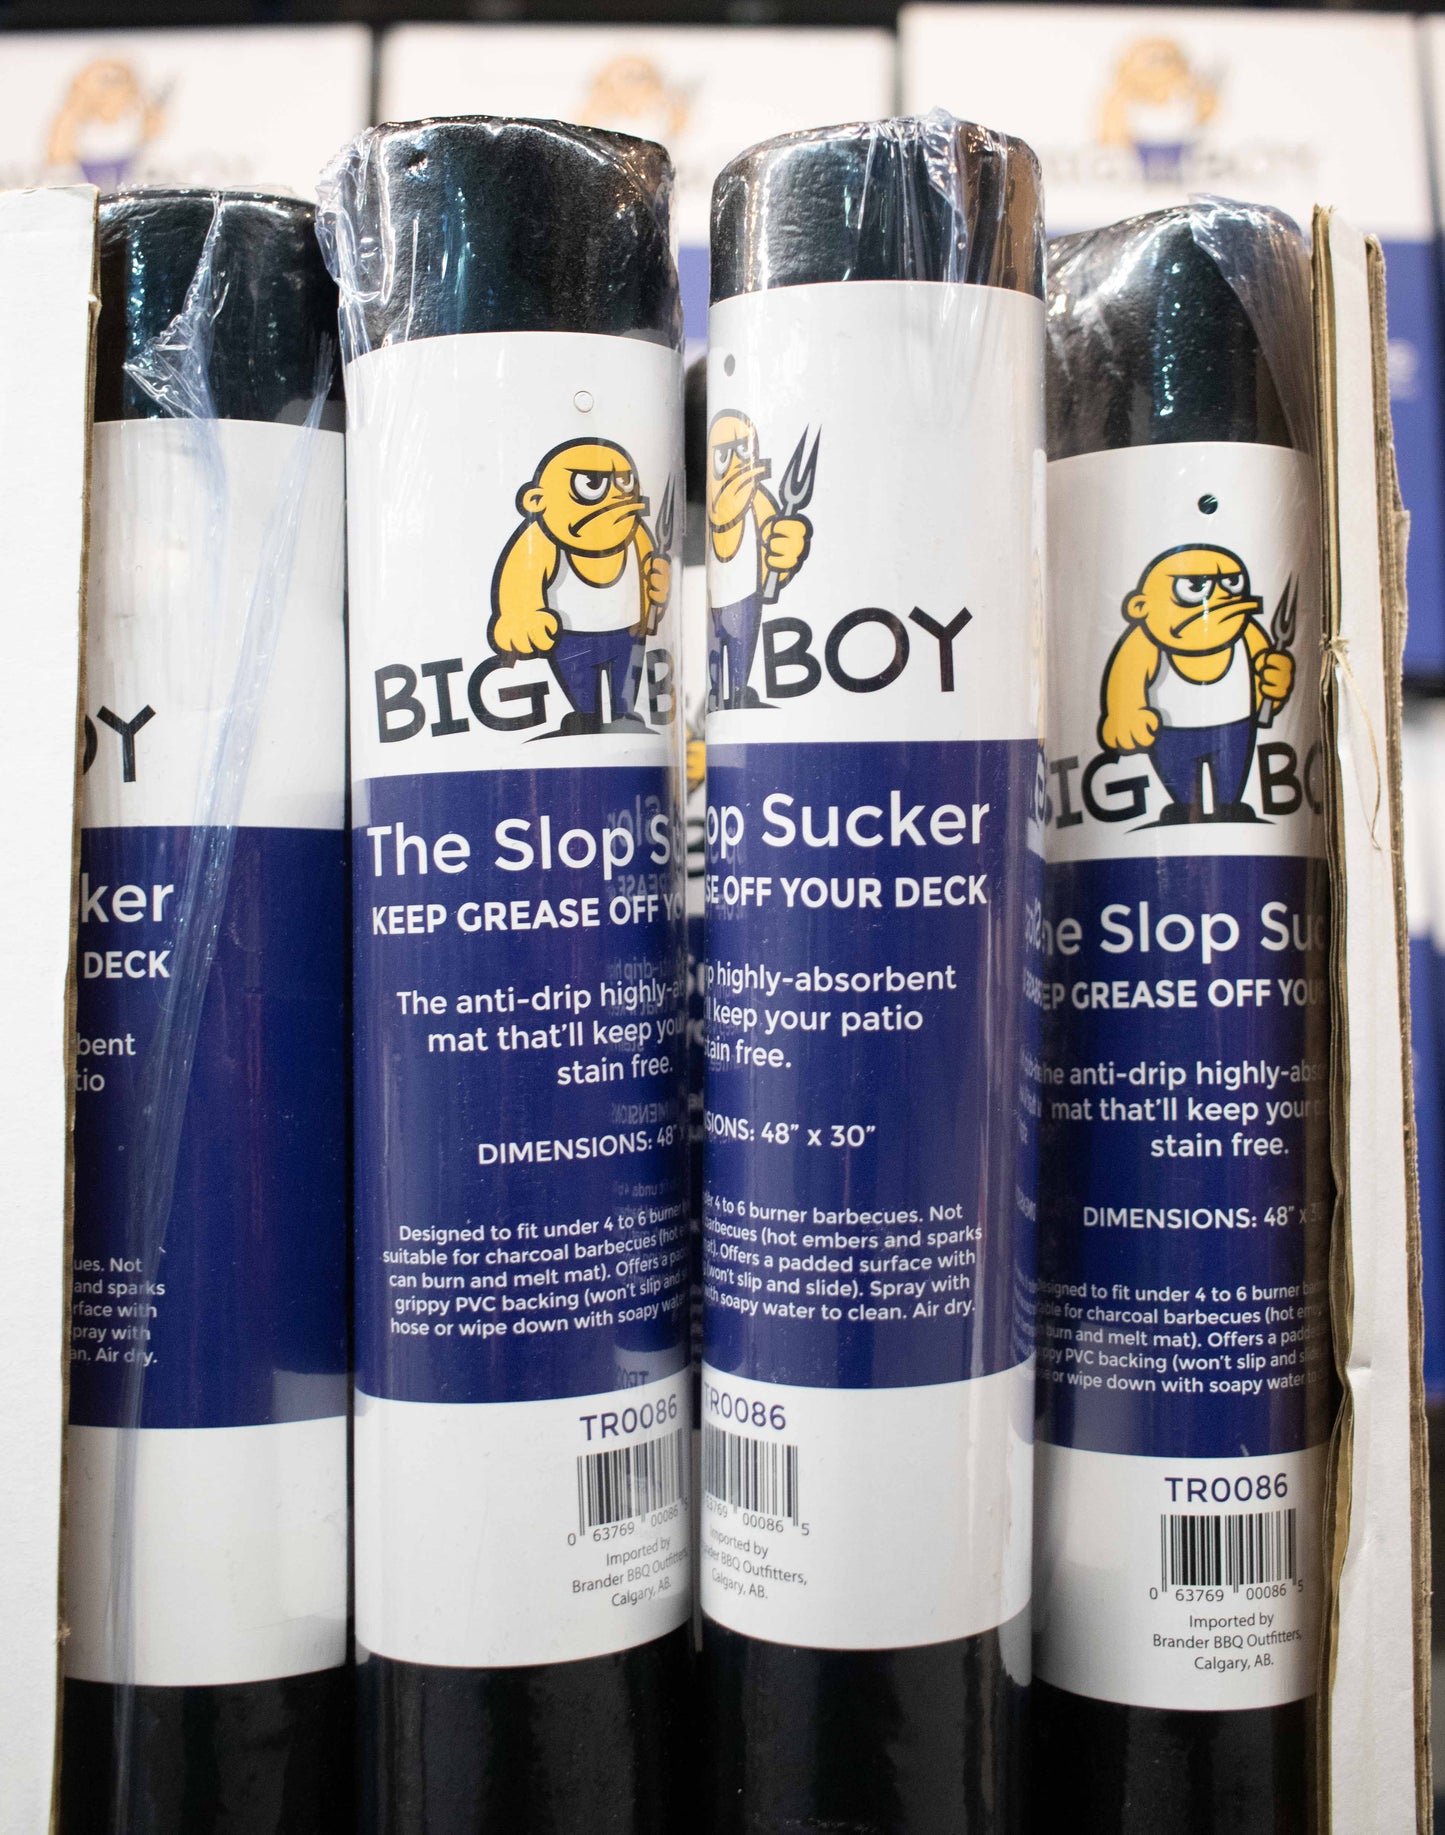 Big Boy The Slop Sucker - Patio Protector